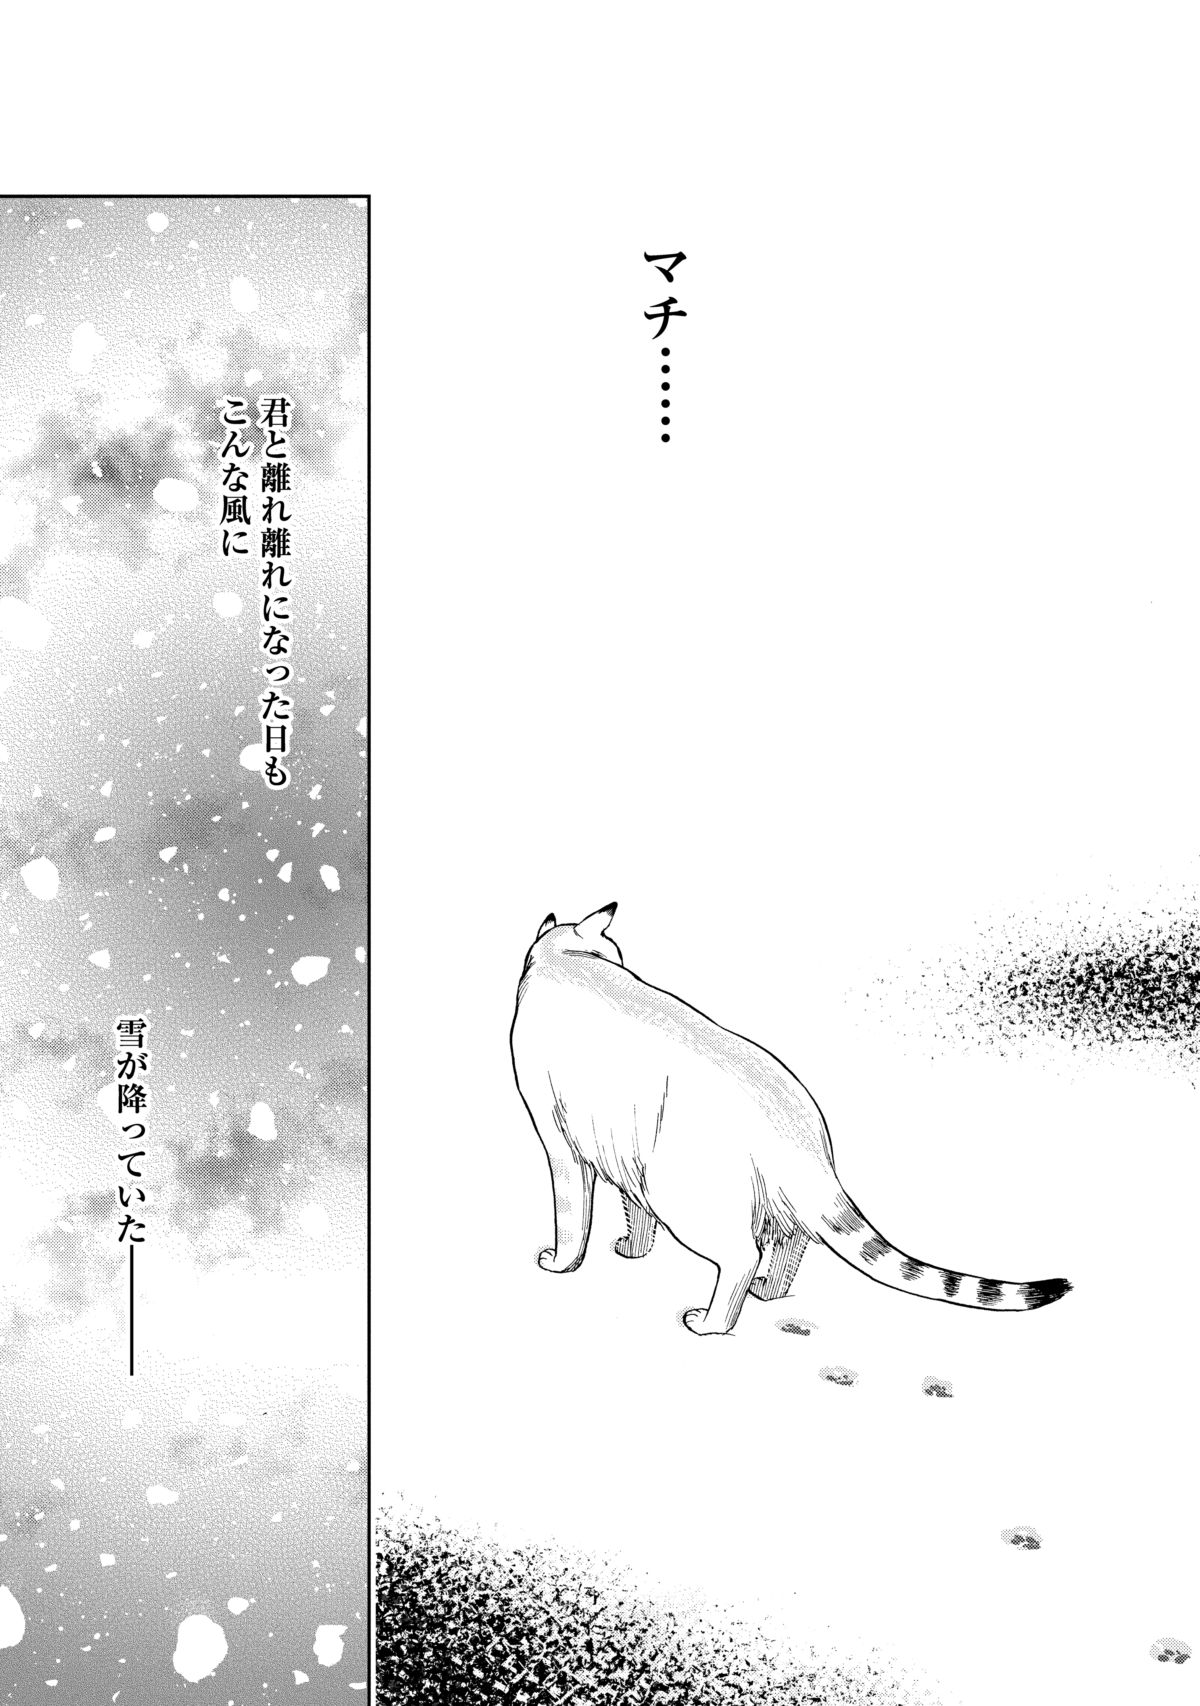 可愛くて切ない、ノラ猫と人間との絆を描いた物語 『ゴジュッセンチの 